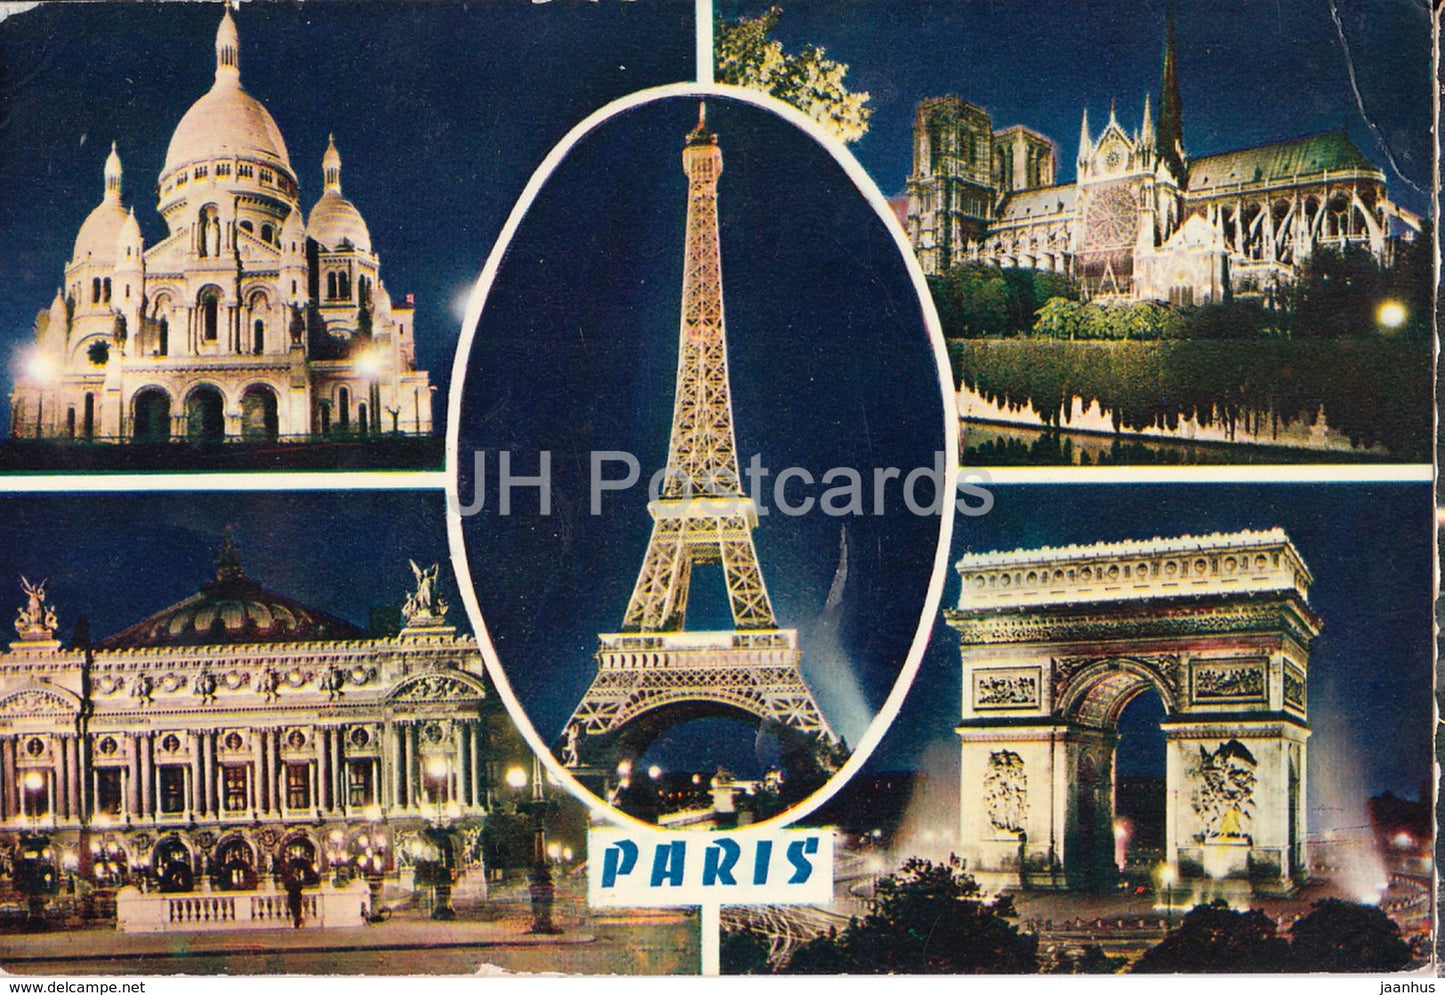 Paris - Le Sacre Coeur - Notre-Dame - L'Opera - L'Arc de Triomphe - La Tour Eiffel - 599 - France - 1979 - used - JH Postcards